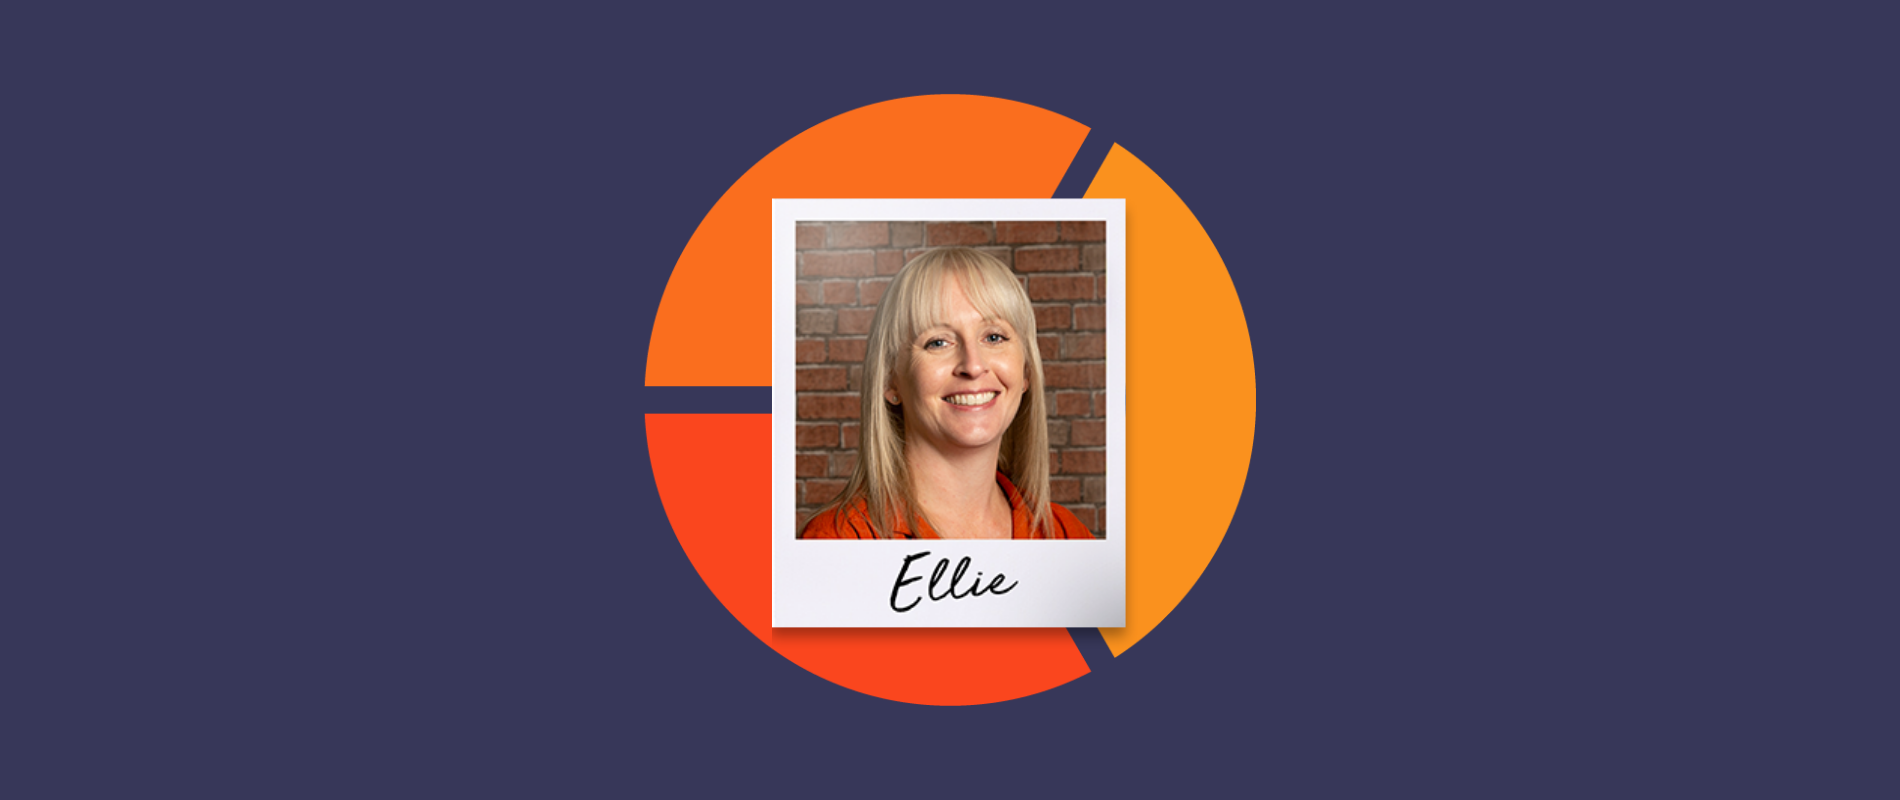 Inbound Sales Strategy: An Interview with Ellie Willson